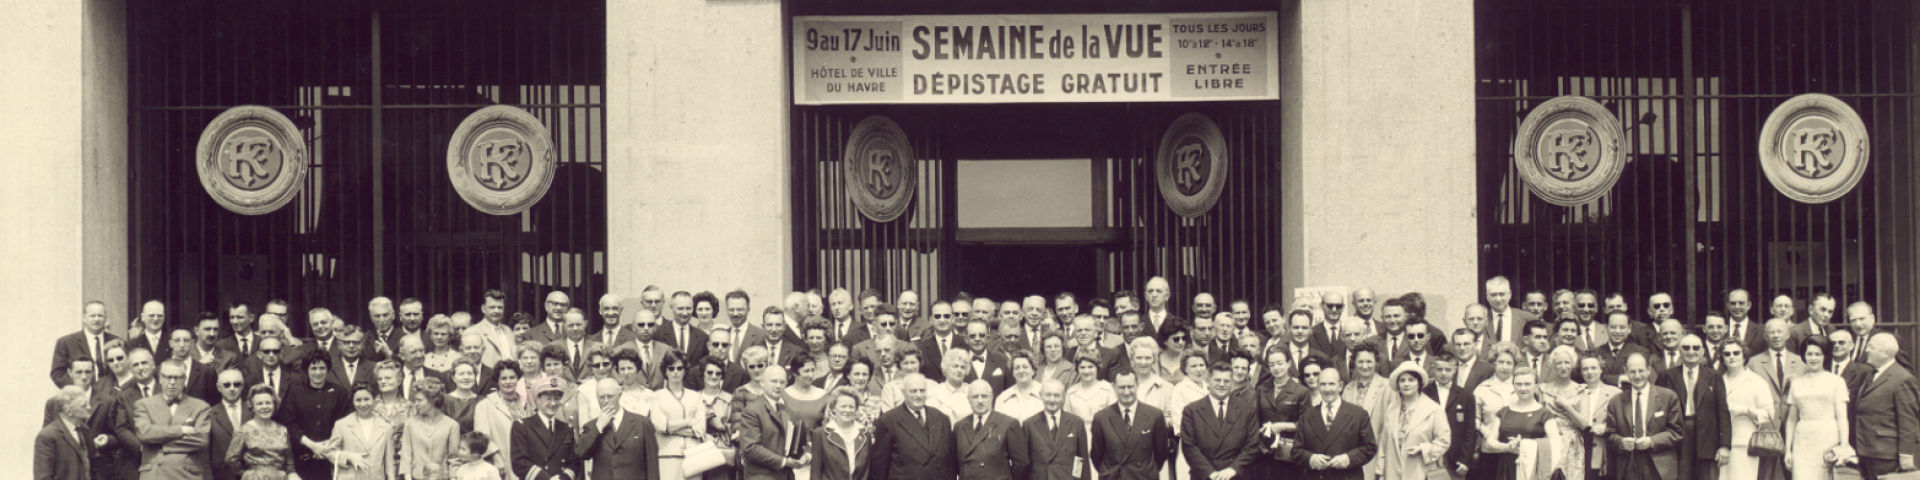 Le Havre, 33e Congrés de l'Union hospitalière 1962